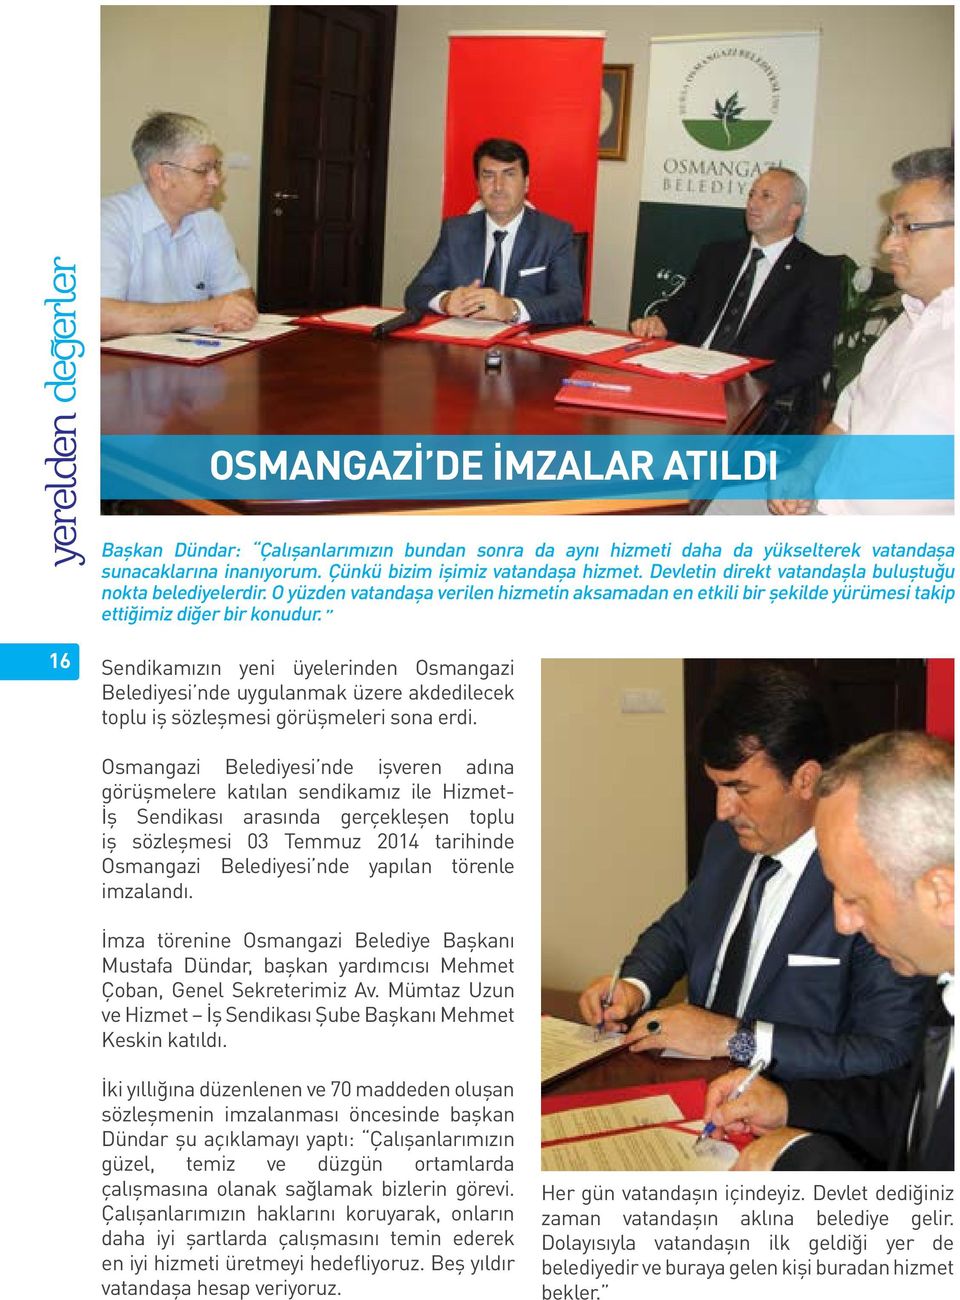 16 Sendikamızın yeni üyelerinden Osmangazi Belediyesi nde uygulanmak üzere akdedilecek toplu iş sözleşmesi görüşmeleri sona erdi.